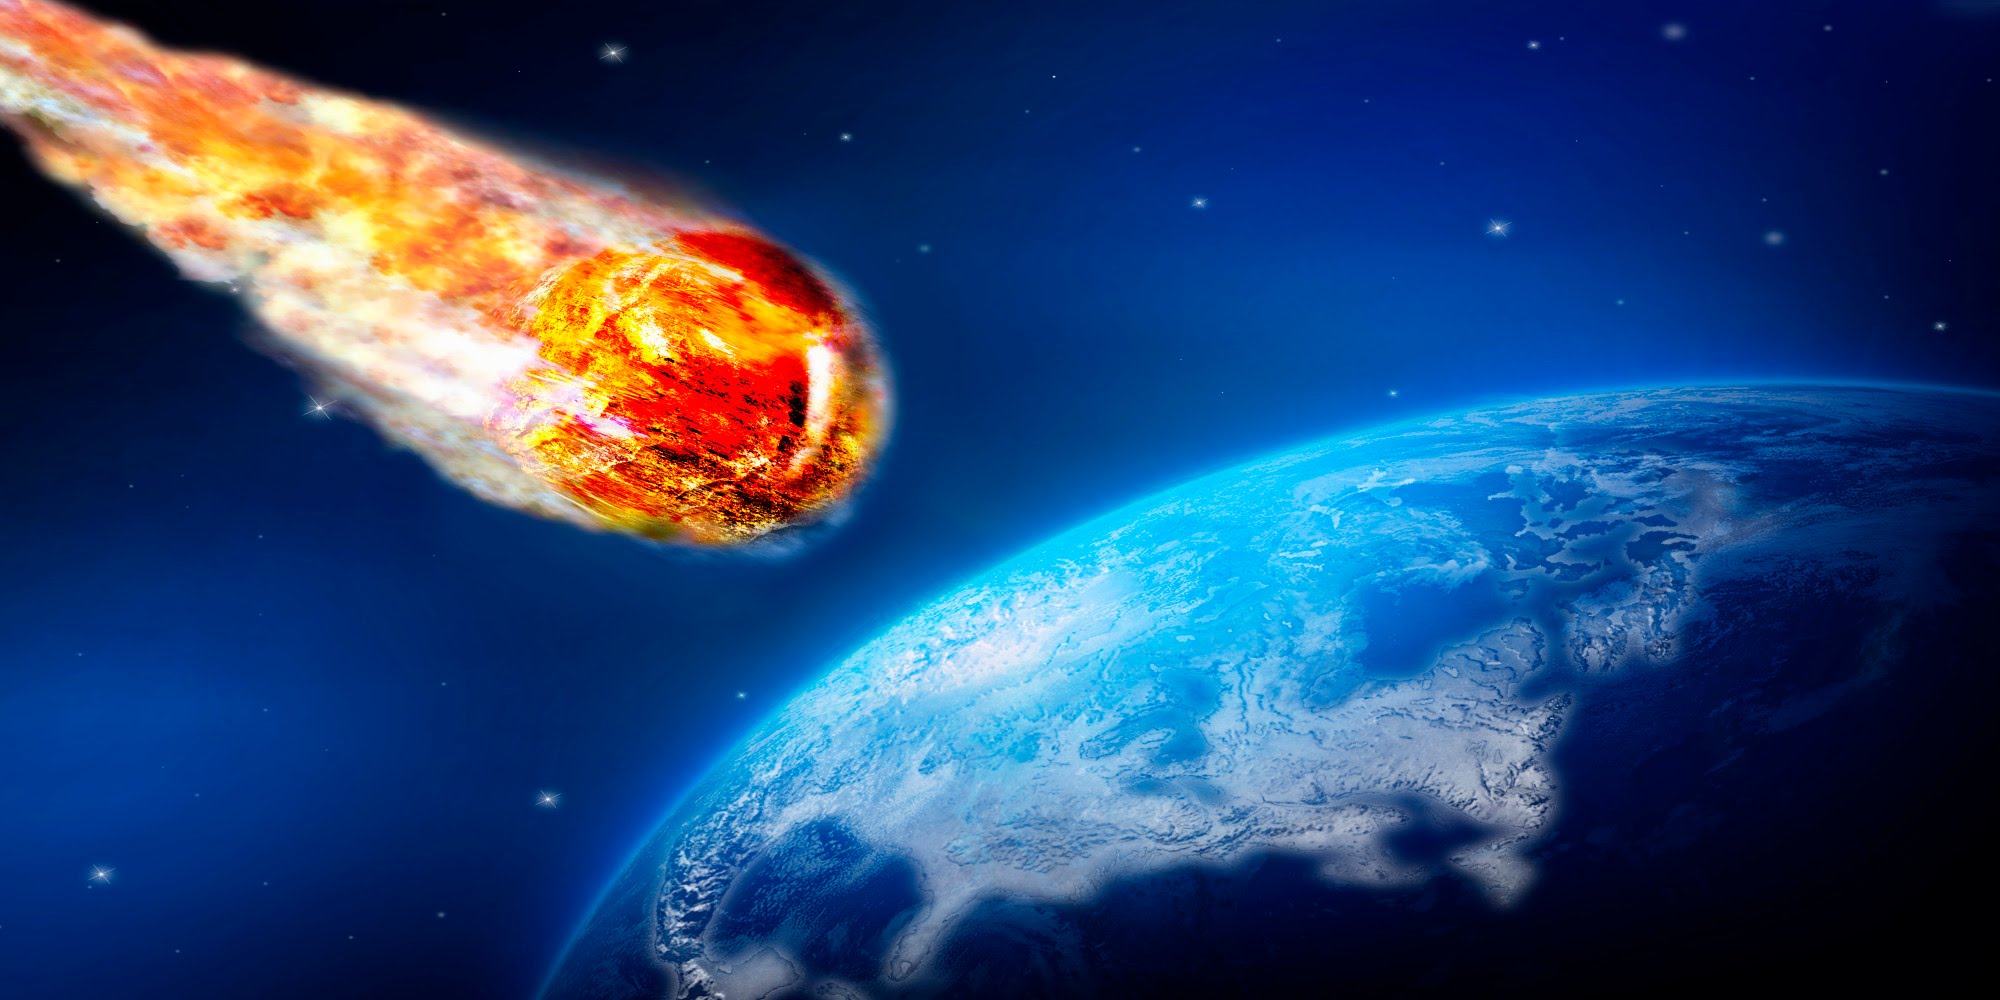 Βίντεο: Η φλόγα στον ουρανό τελικά δεν ήταν μετεωρίτης – Το βίντεο που αποκάλυψε την αλήθεια